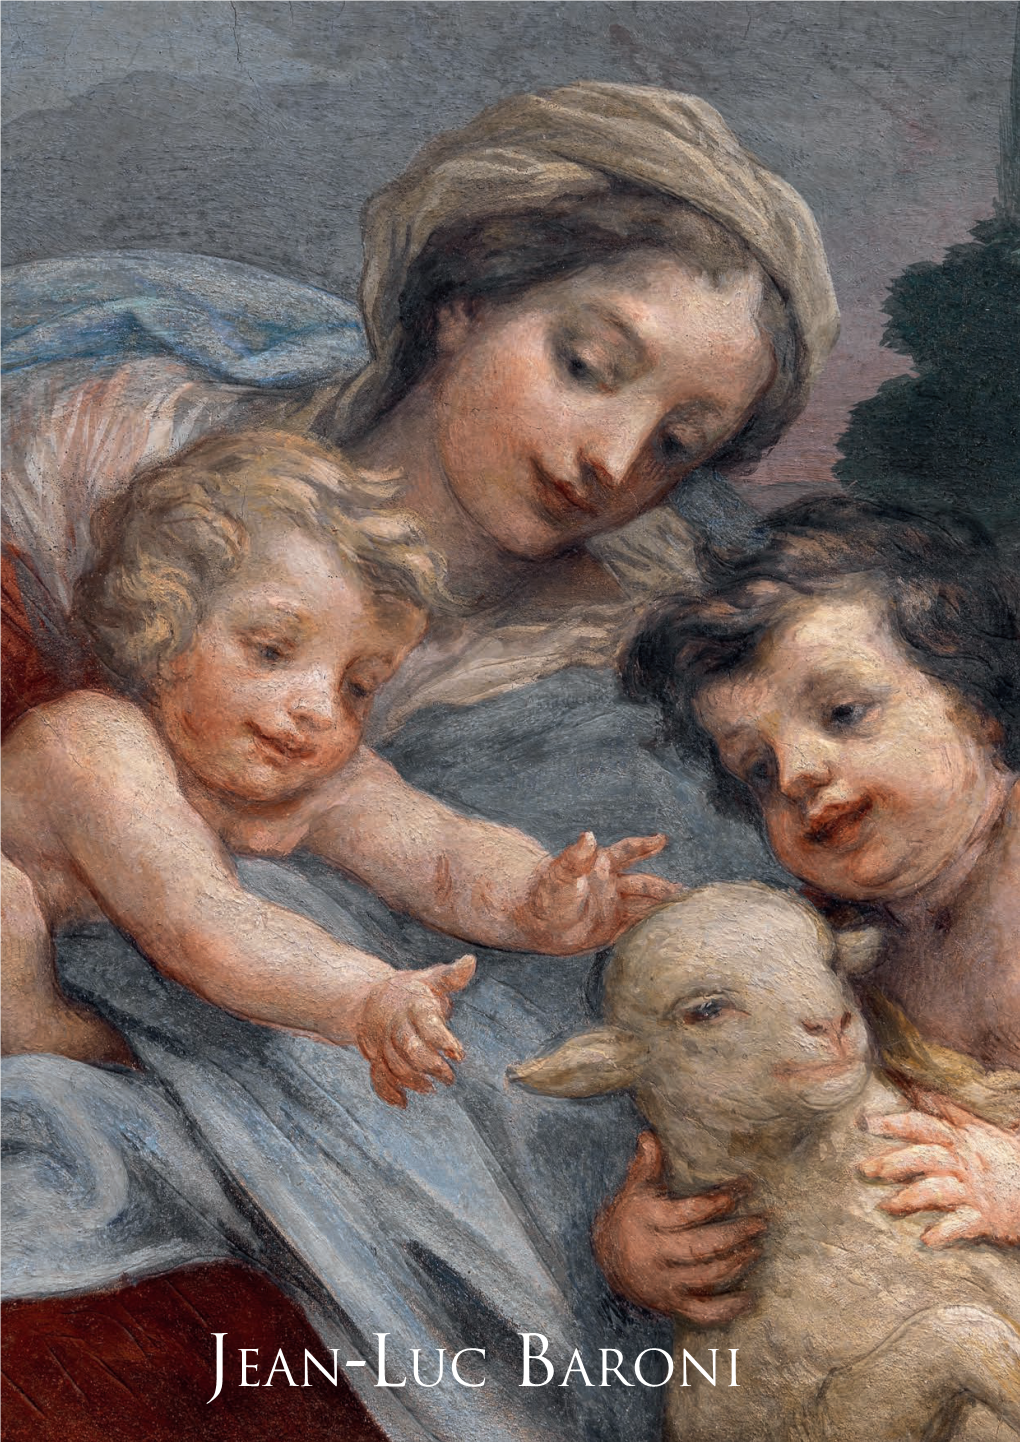 A “Paniera” Fresco by Baldassarre Franceschini, Il Volterrano, for the Niccolini Family